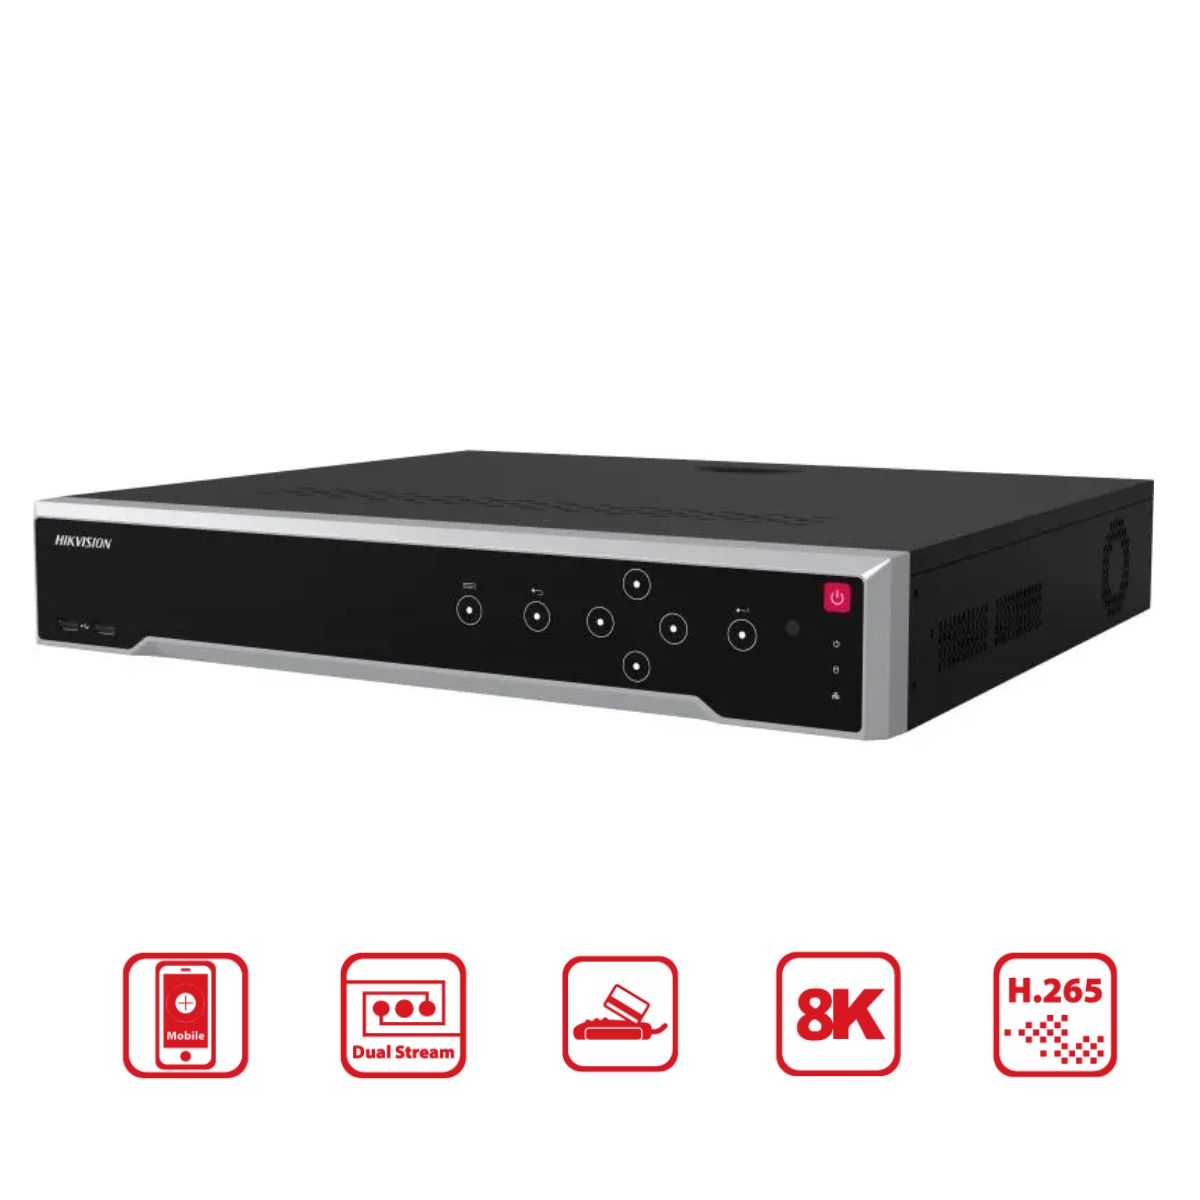 Đầu thu camera IP 8K 16 kênh Hikvision DS-7716NI-M4 hỗ trợ 4 SATA 14TB và 1 eSATA,  3 cổng USB